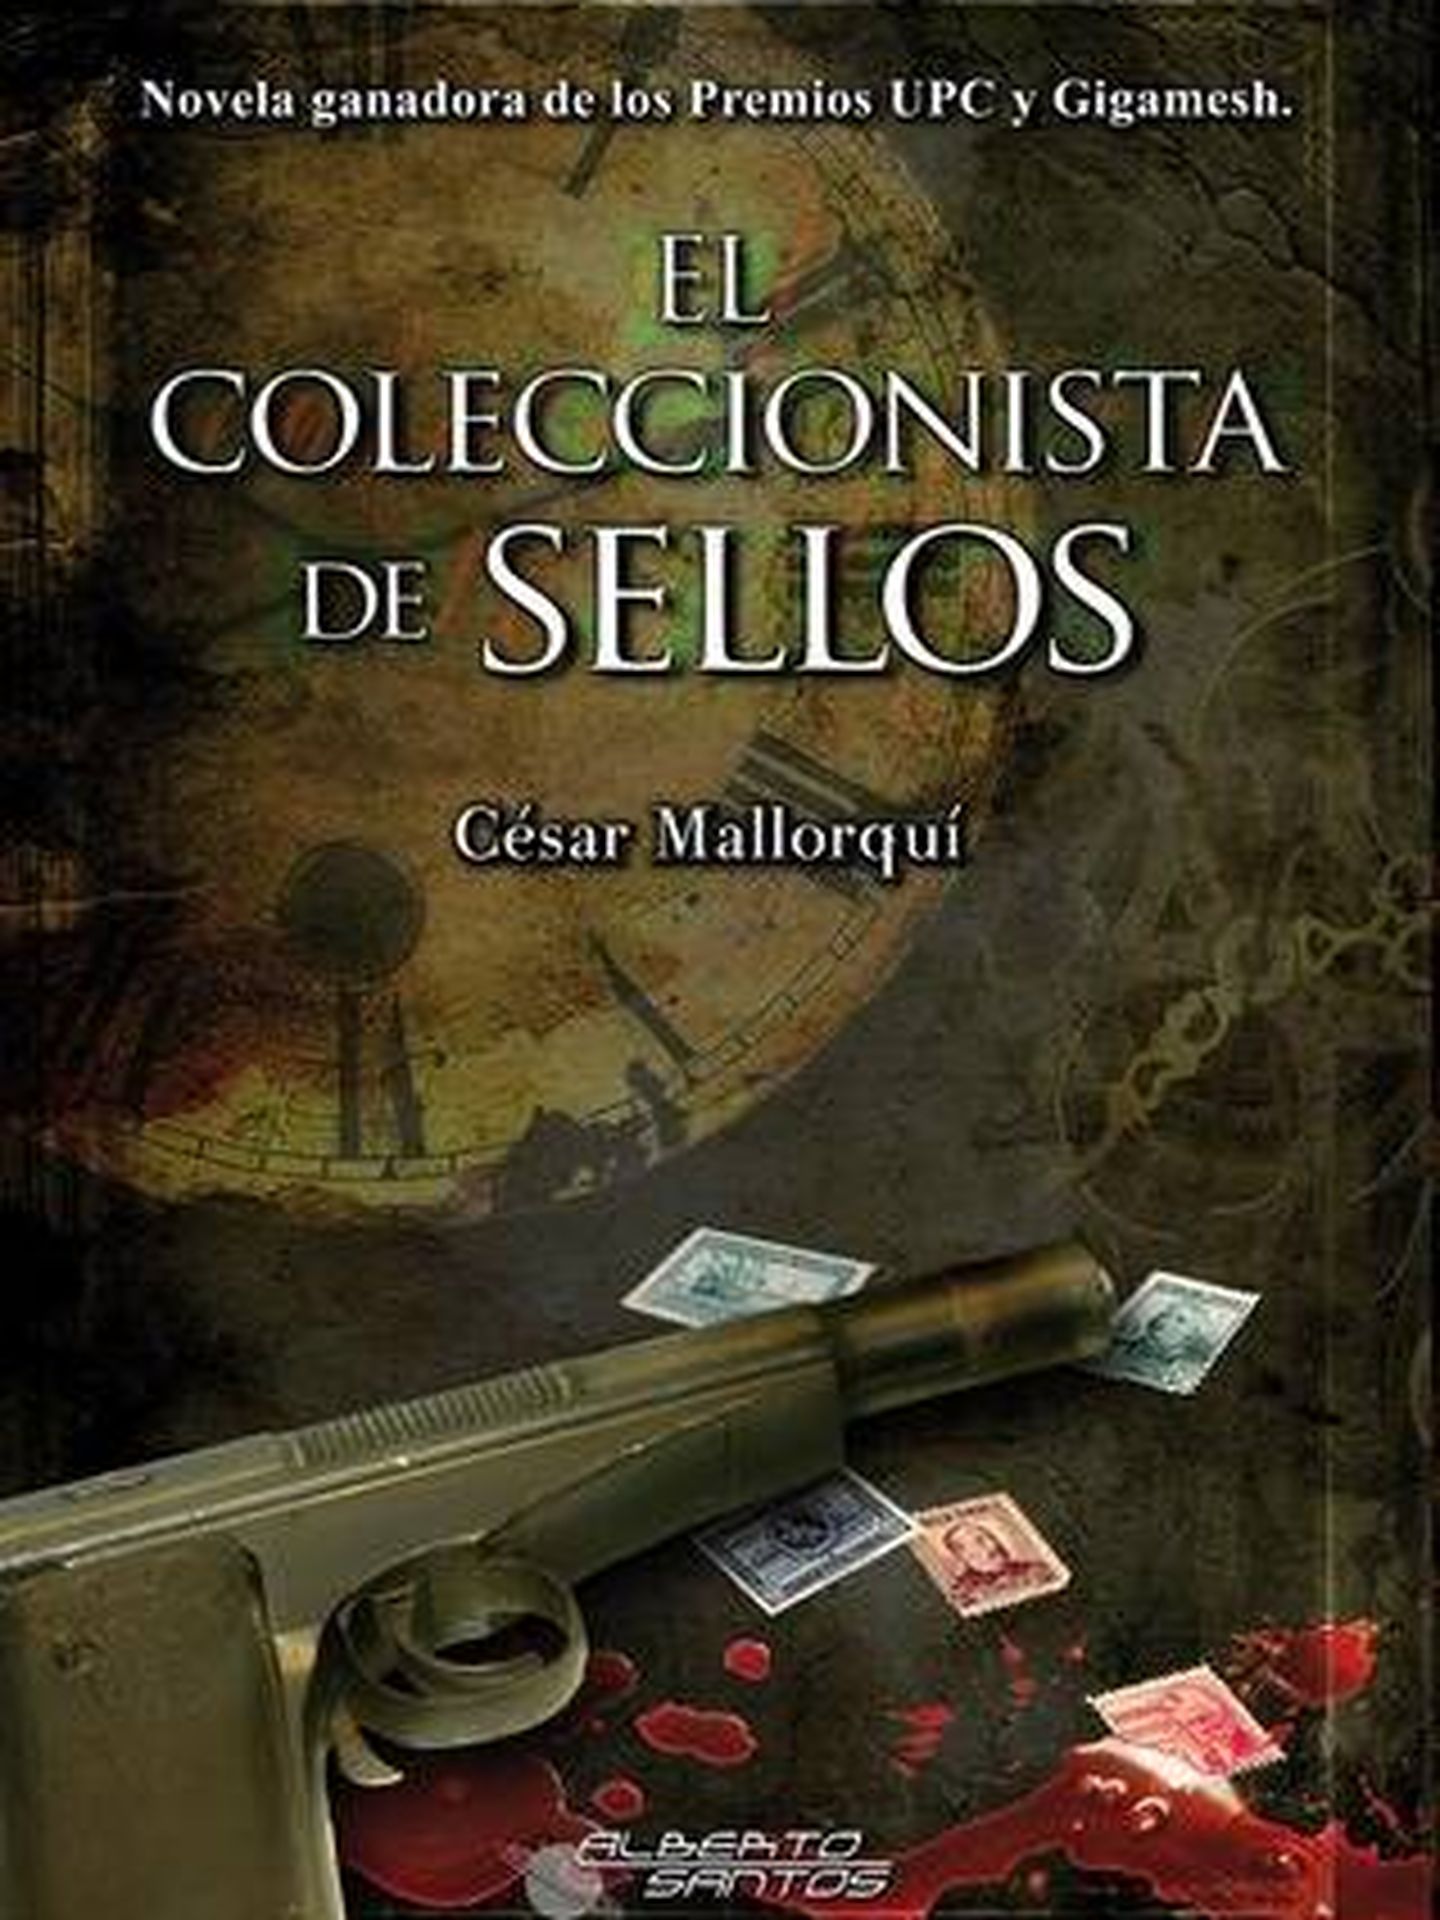 'El coleccionista de sellos'.